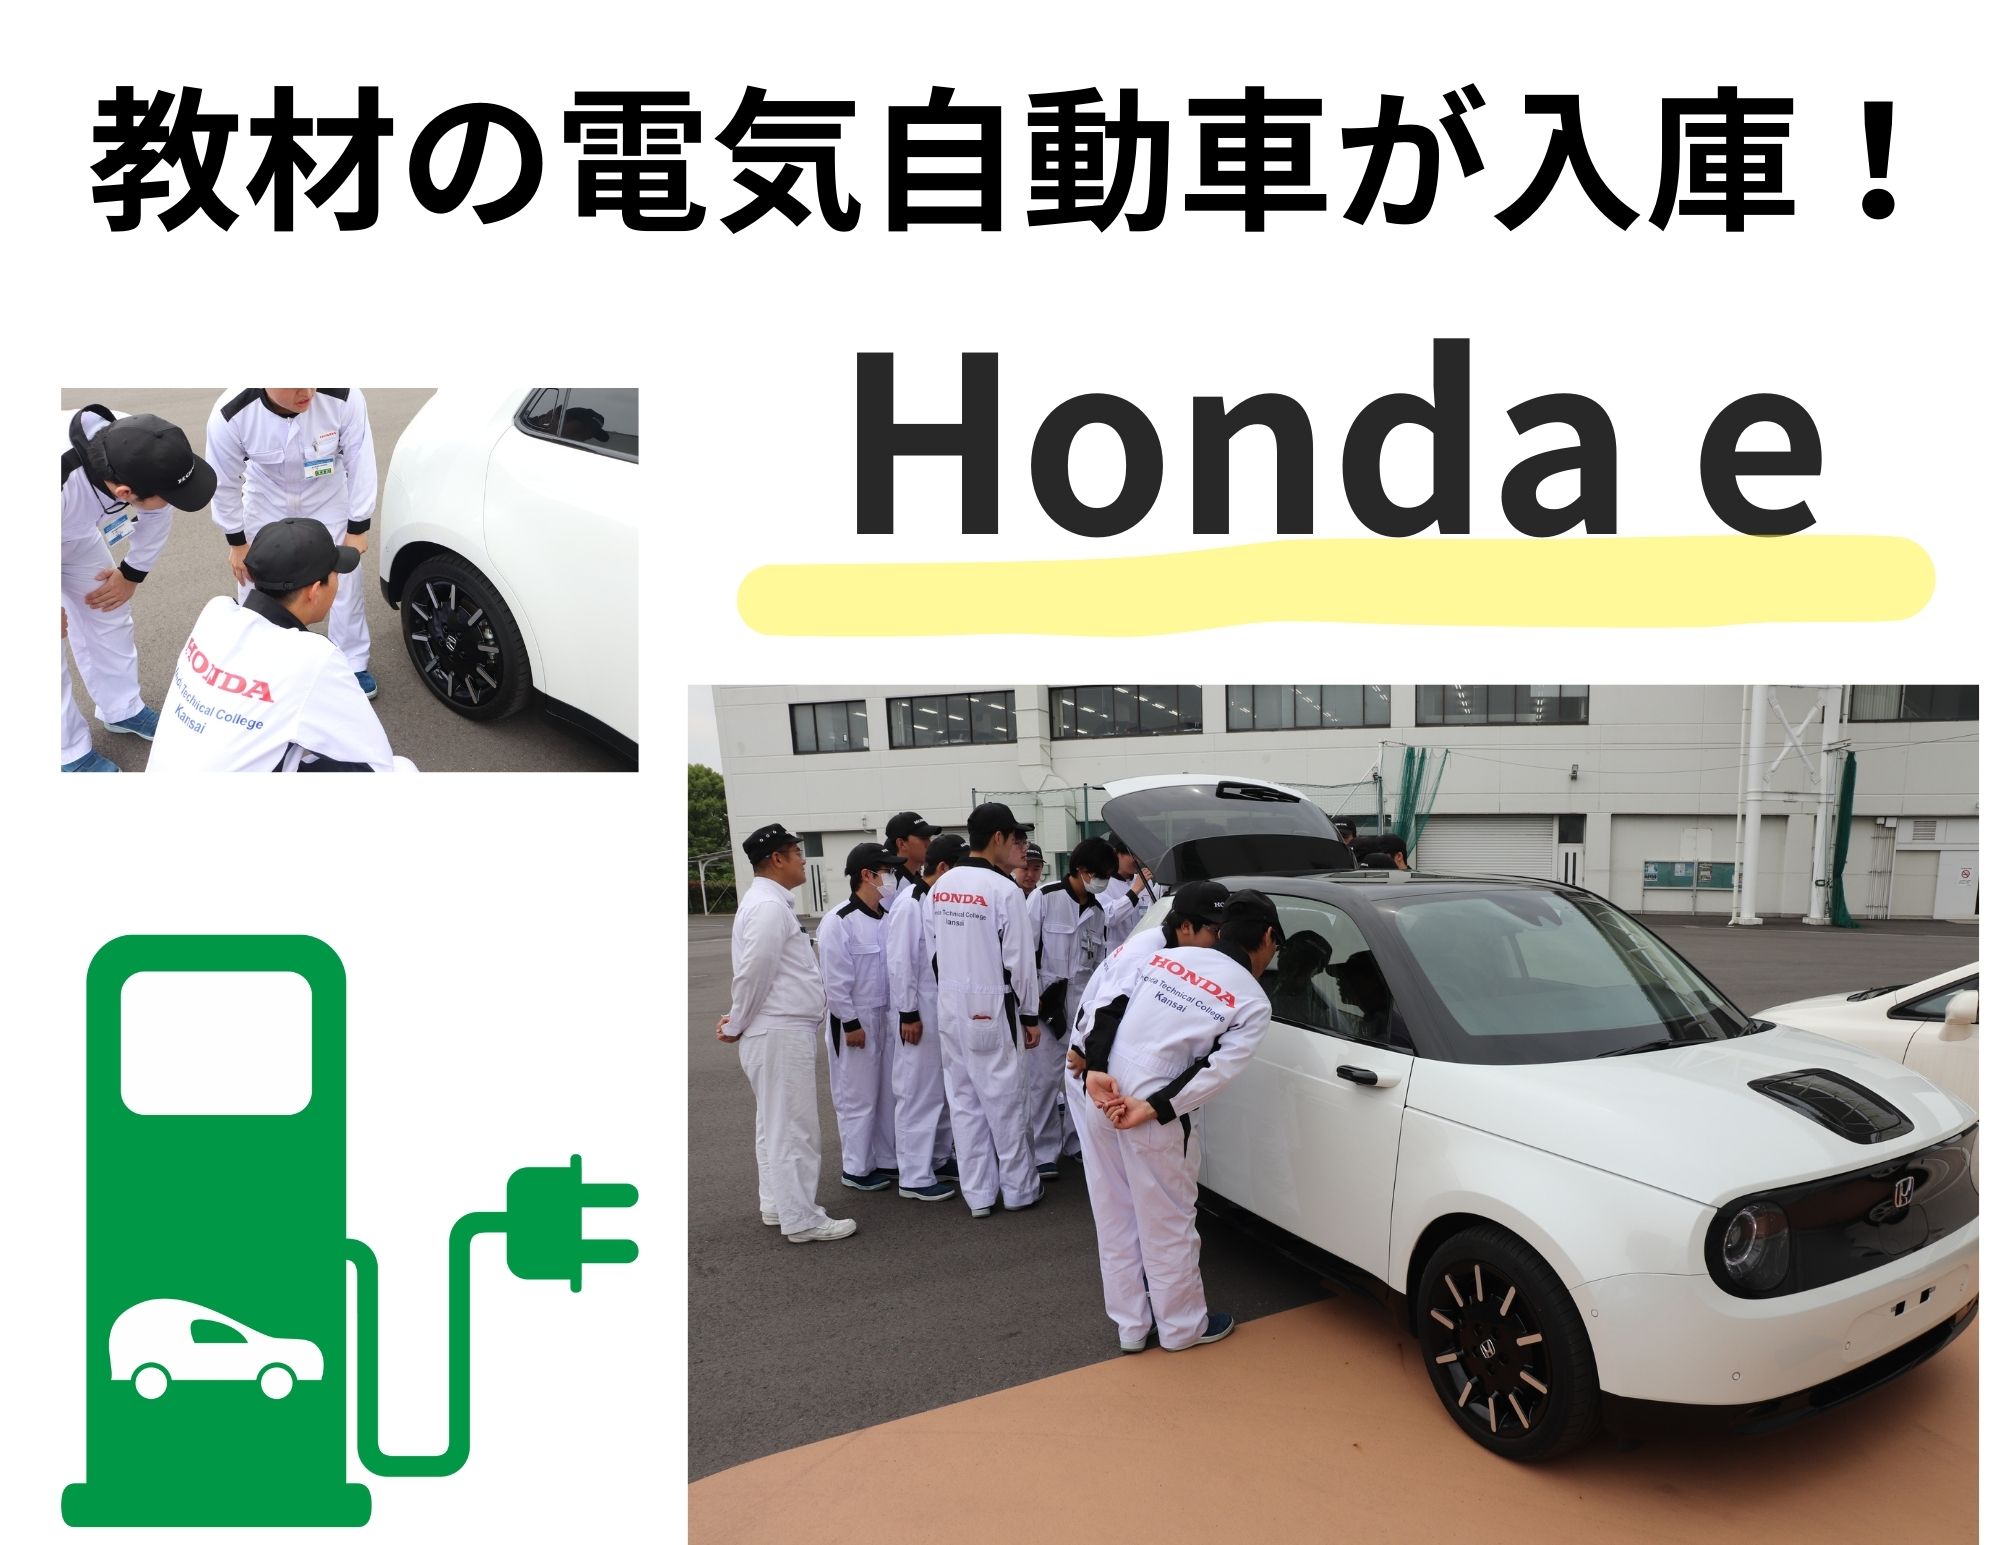 ”興味津々”「電気自動車のHonda e」が教材として入庫(^_-)-☆